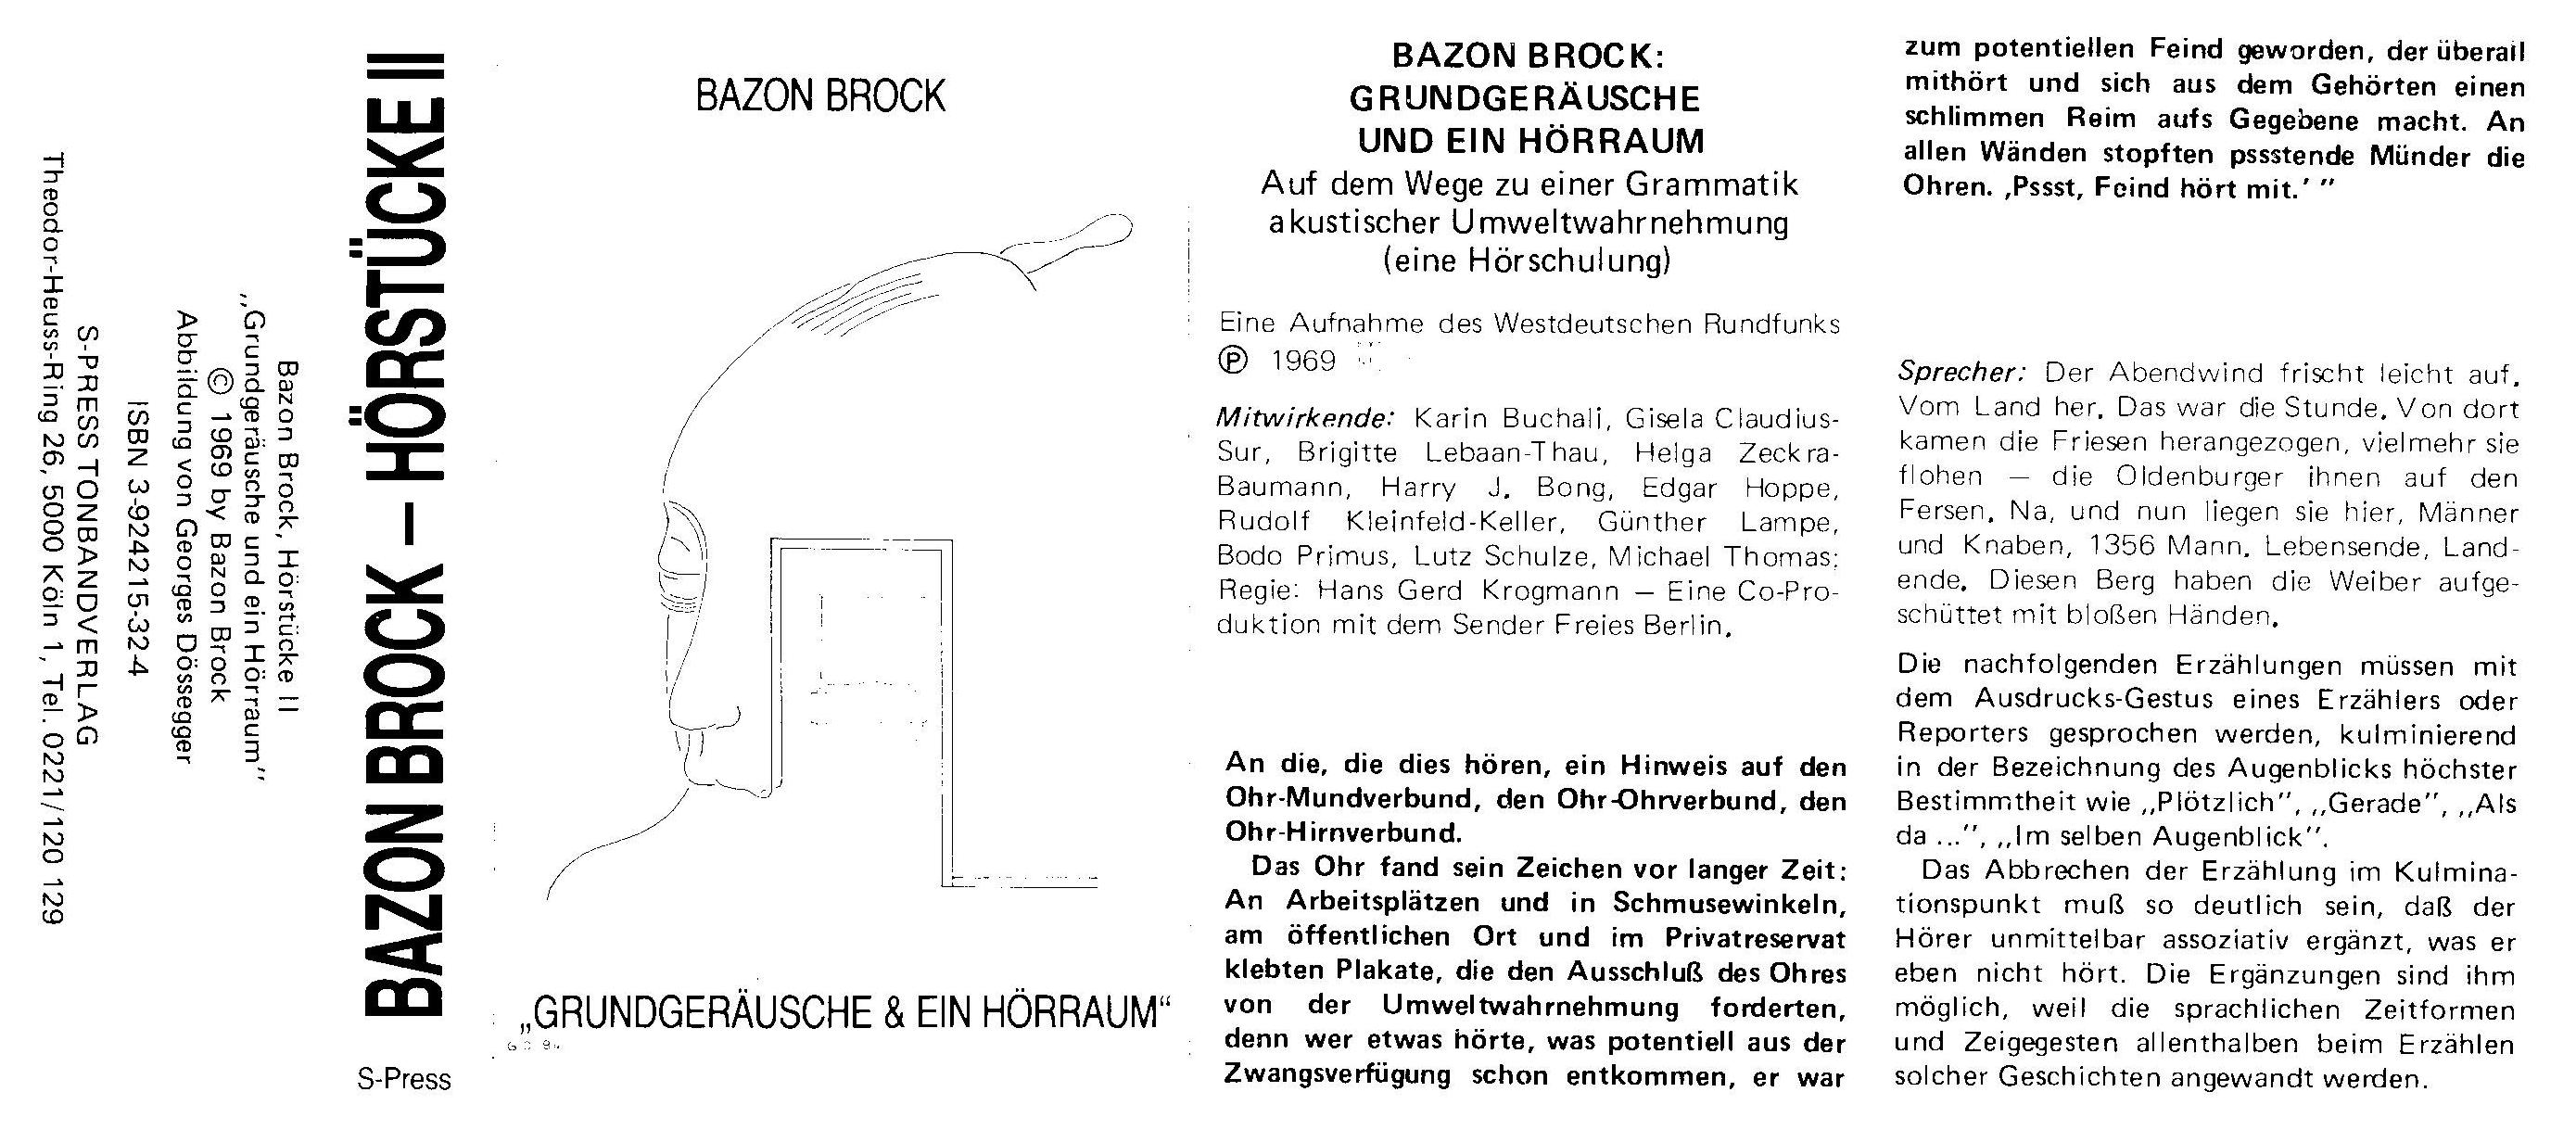 Hörstücke II: Grundgeräusche und ein Hörraum. Eine Hörschulung, Bild: S-Press Tonbandverlag Köln, 1969..